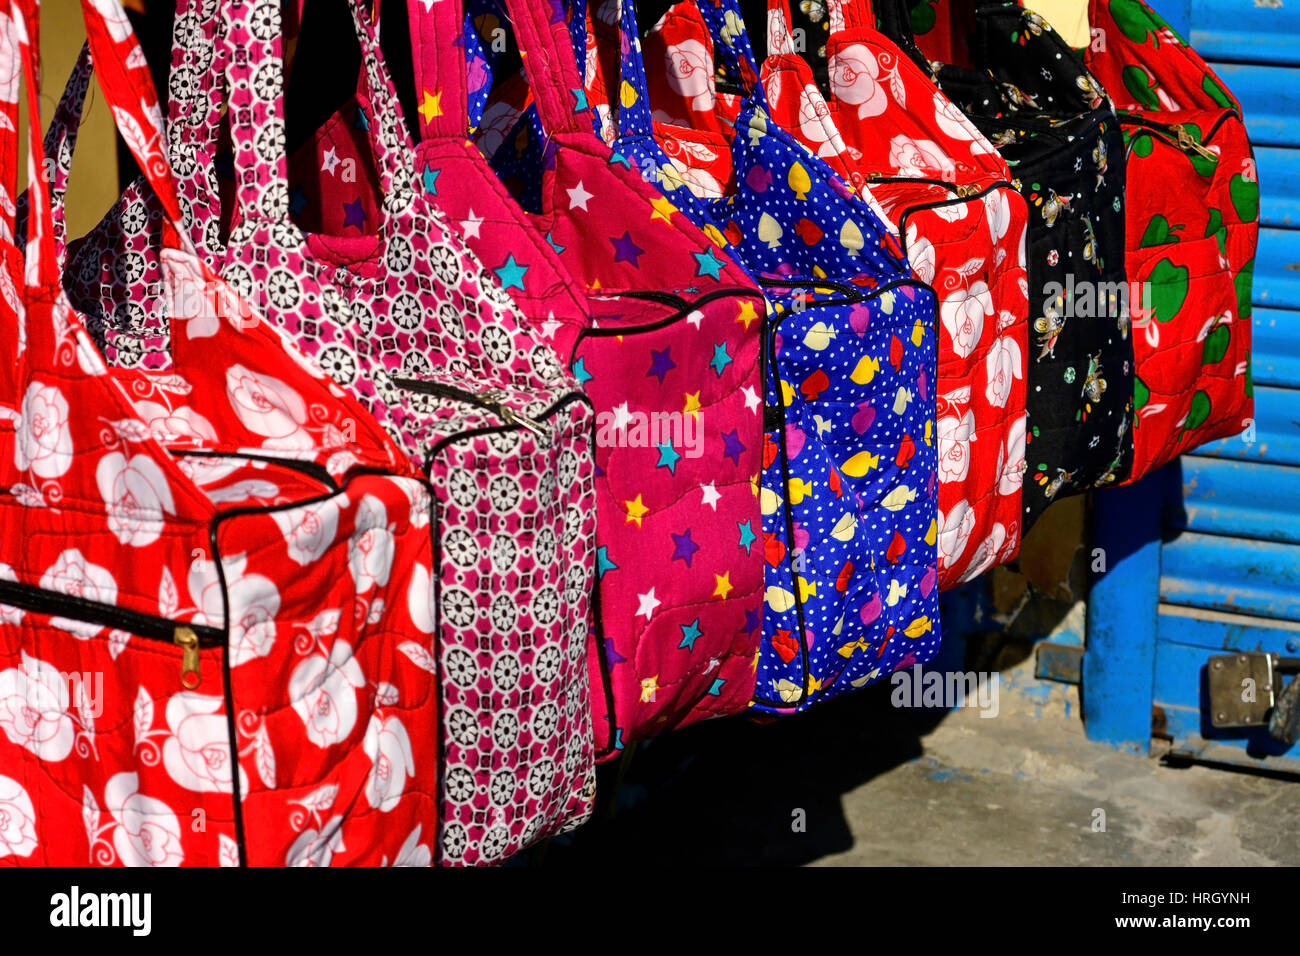 Des sacs colorés en marché, Inde Banque D'Images